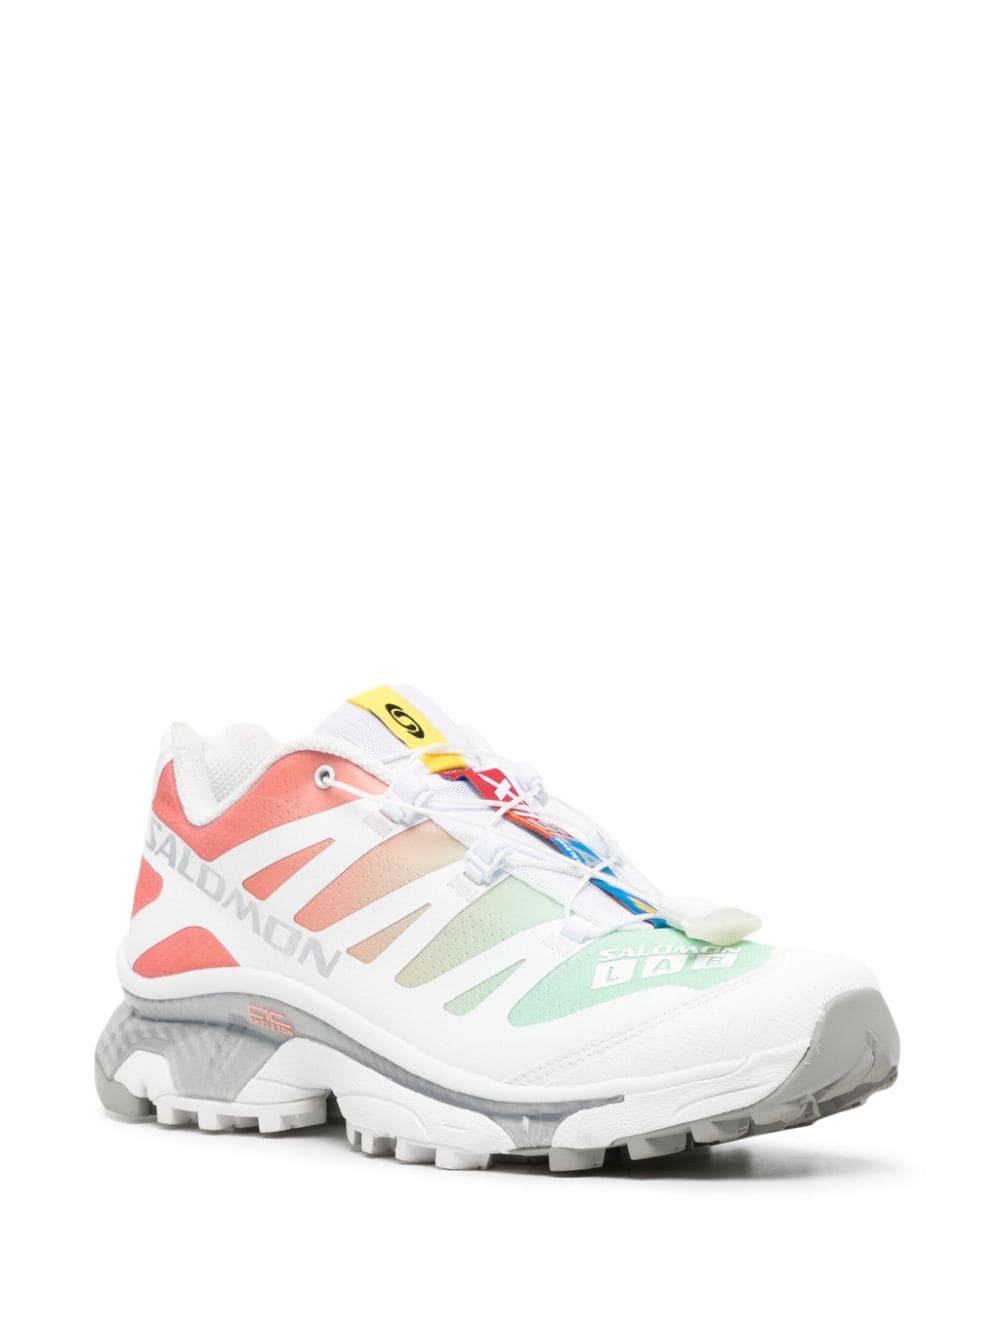 Multicolour XT-4 OG sneakers